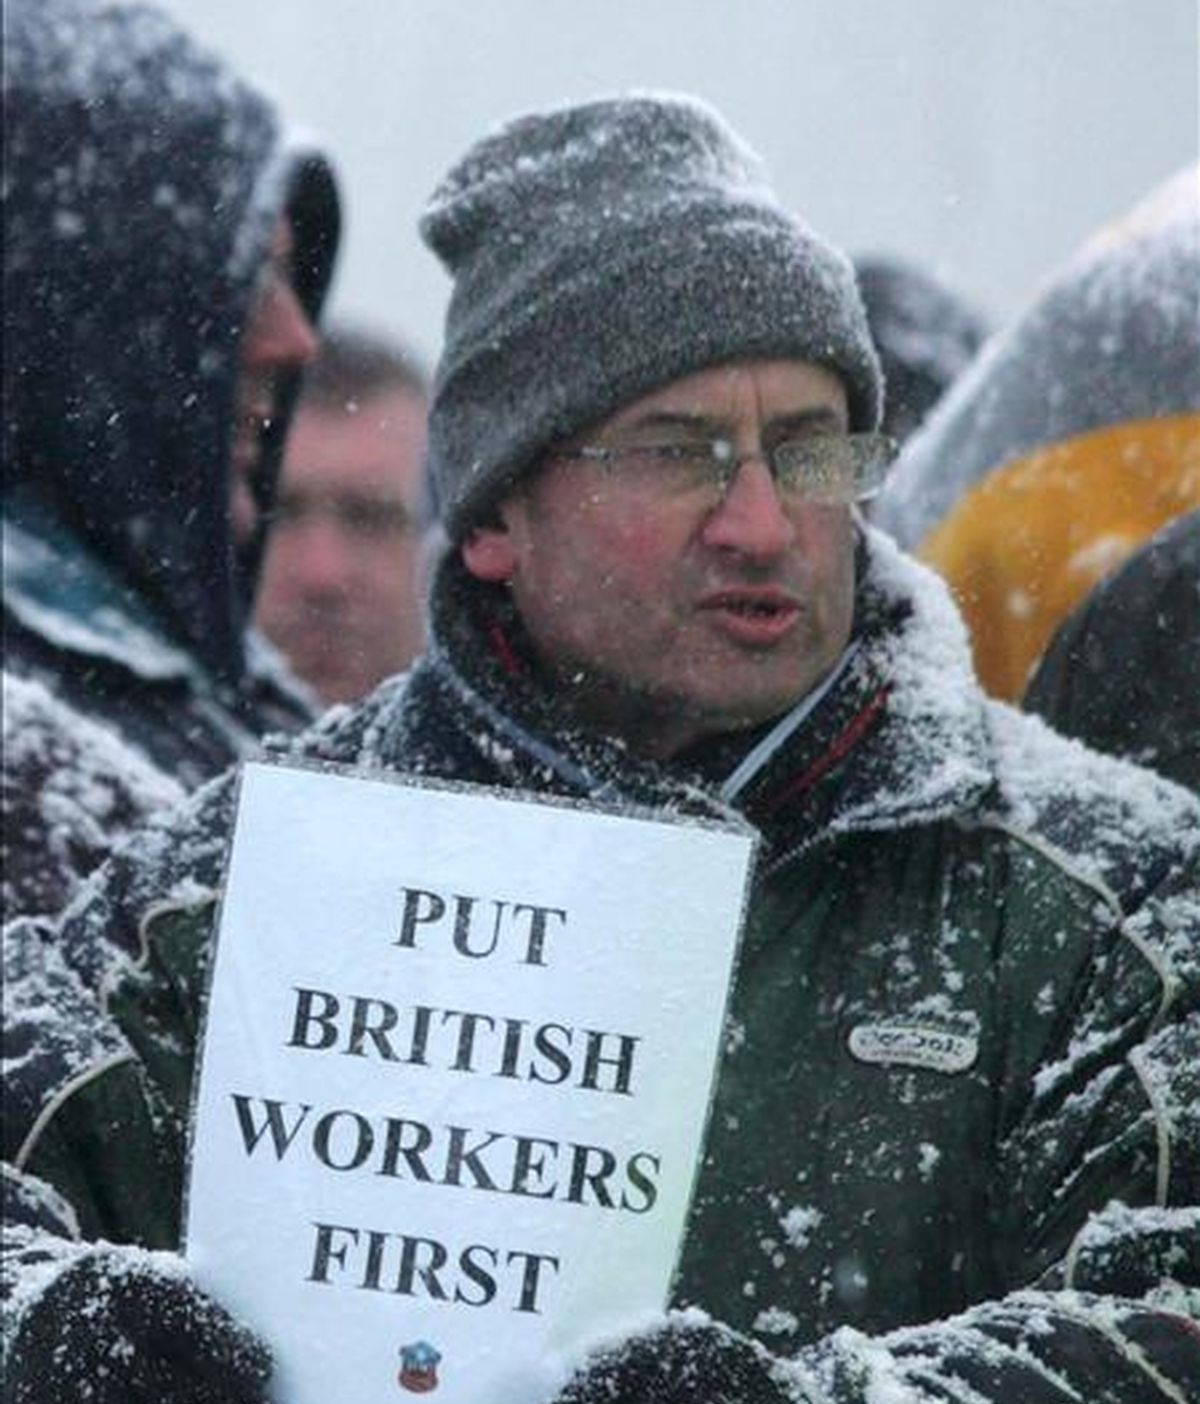 En la imagen, varios empleados se manifiestan contra de la contratación de trabajadores extranjeros a las afueras de la refinería de Lindsey en Immingham, Lincolnshire, Reino Unido. EFE/Archivo